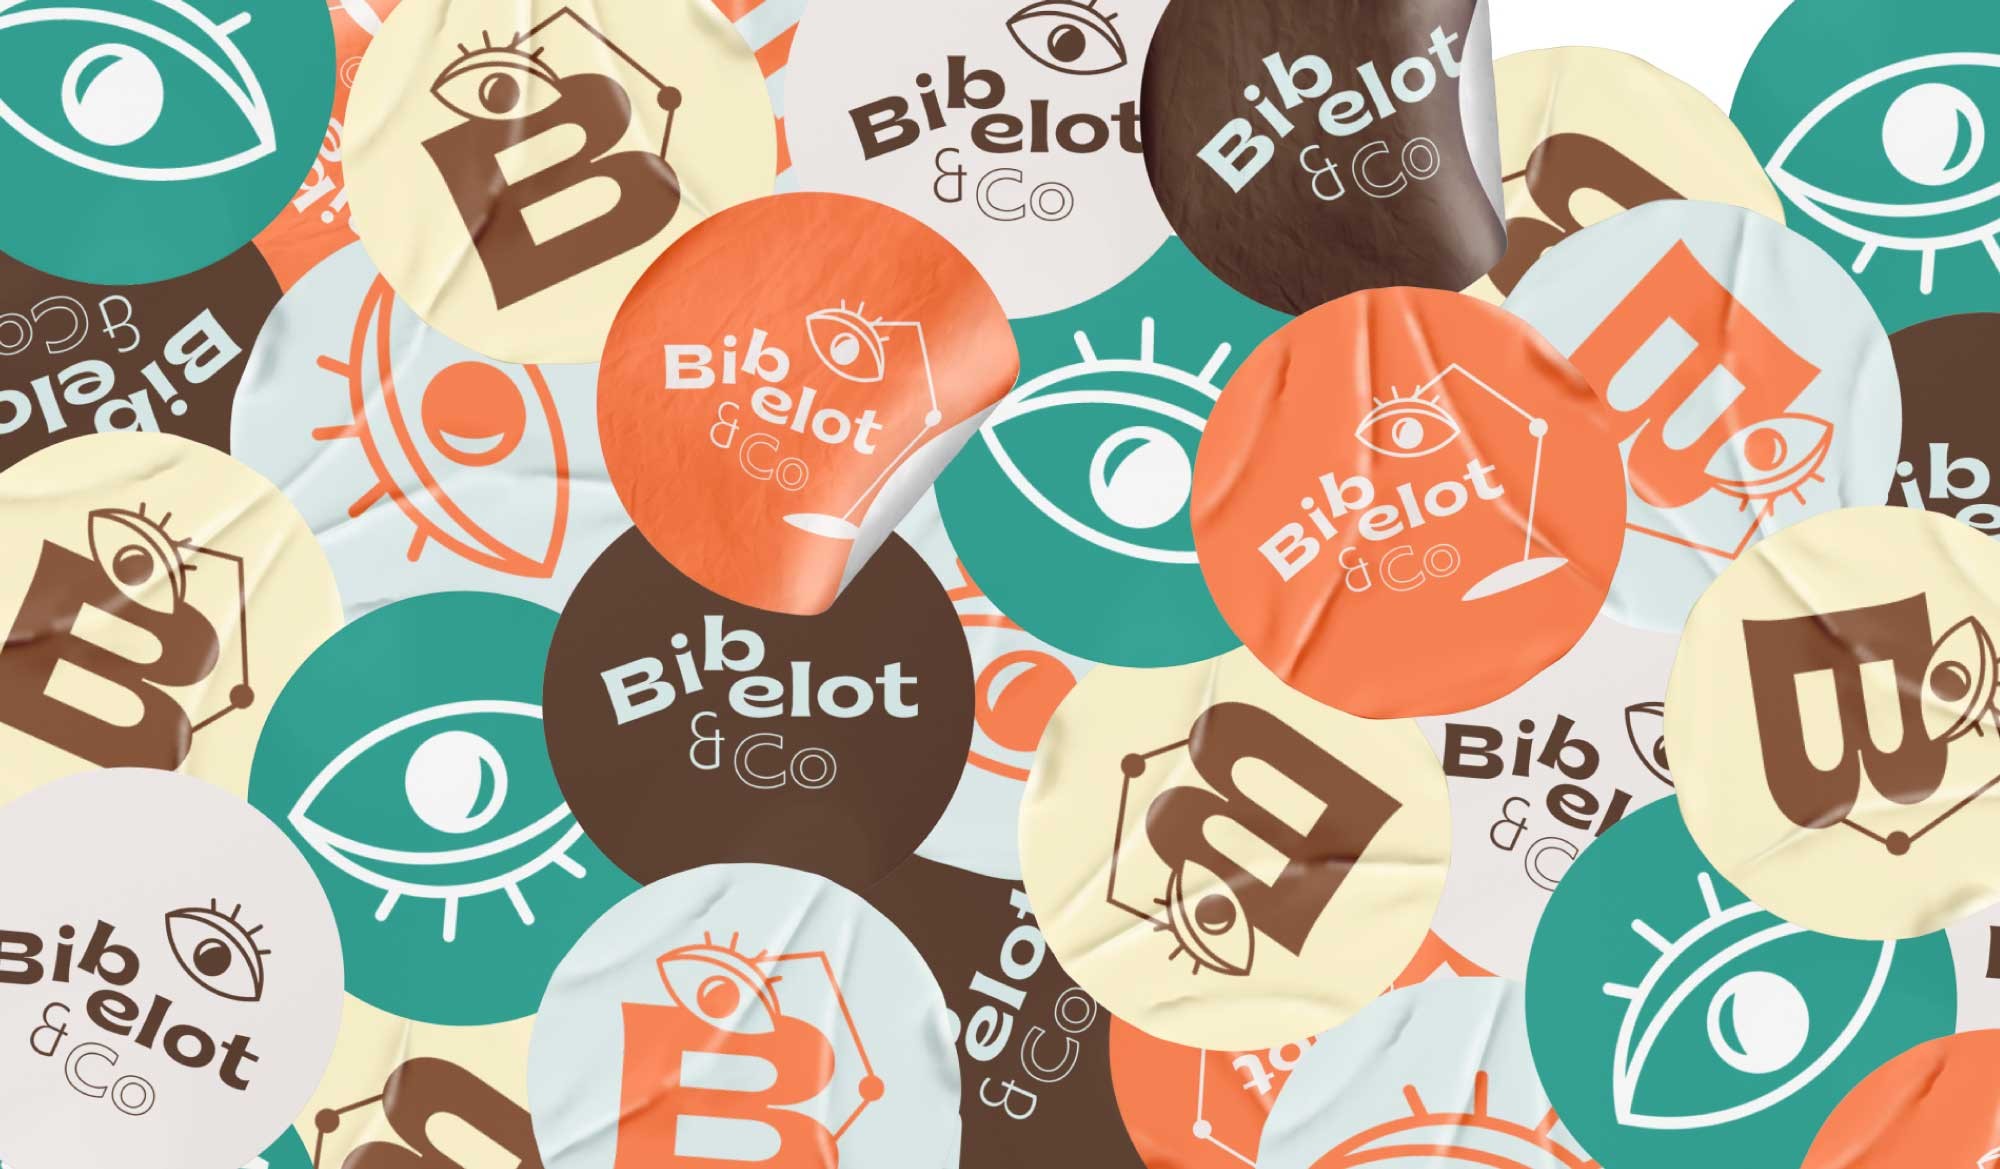 Superposition de stickers Bibelot & Co déclinés avec différentes couleurs et visuels réalisés par ÈS.B Studio.